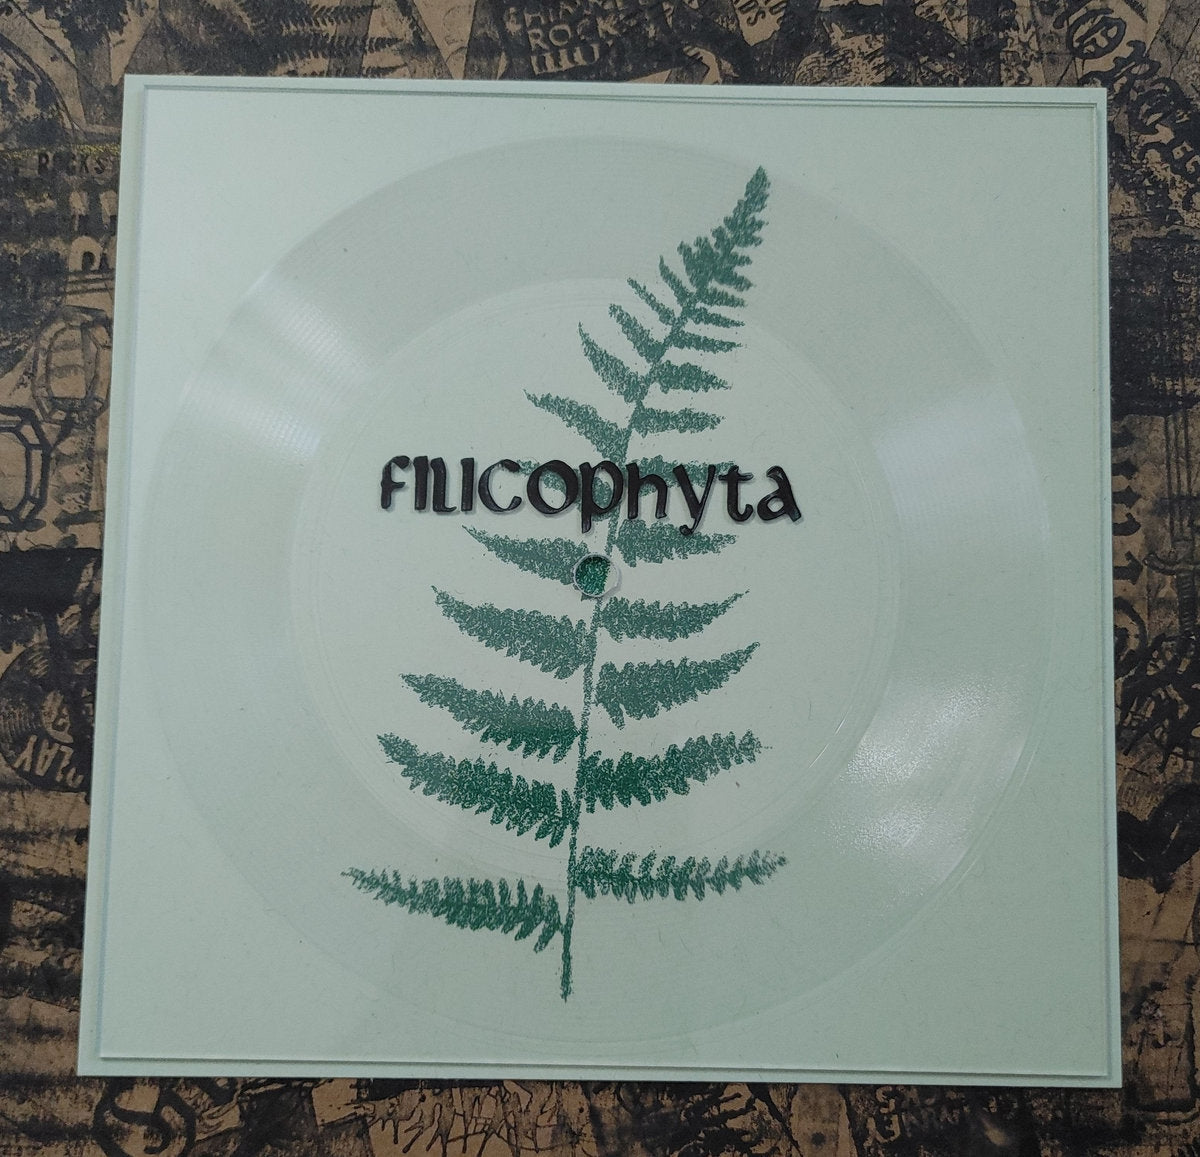 [SOLD OUT] FILICOPHYTA "Demo I" Lathe 7" Vinyl (lim. 50, color)